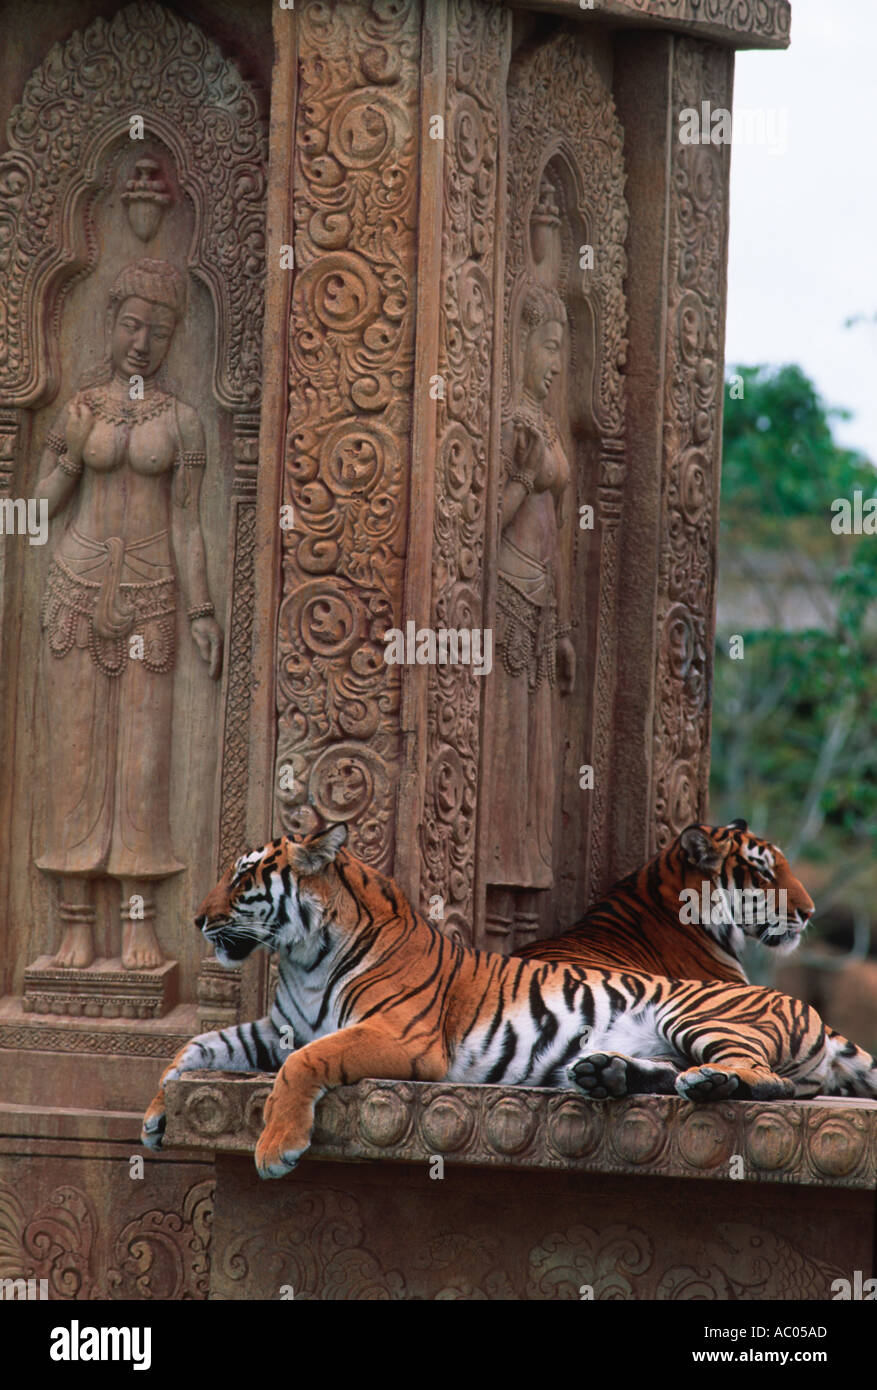 Tigre Panthera tigris Asia amenazadas pero extinguido en gran parte de su área de distribución Foto de stock